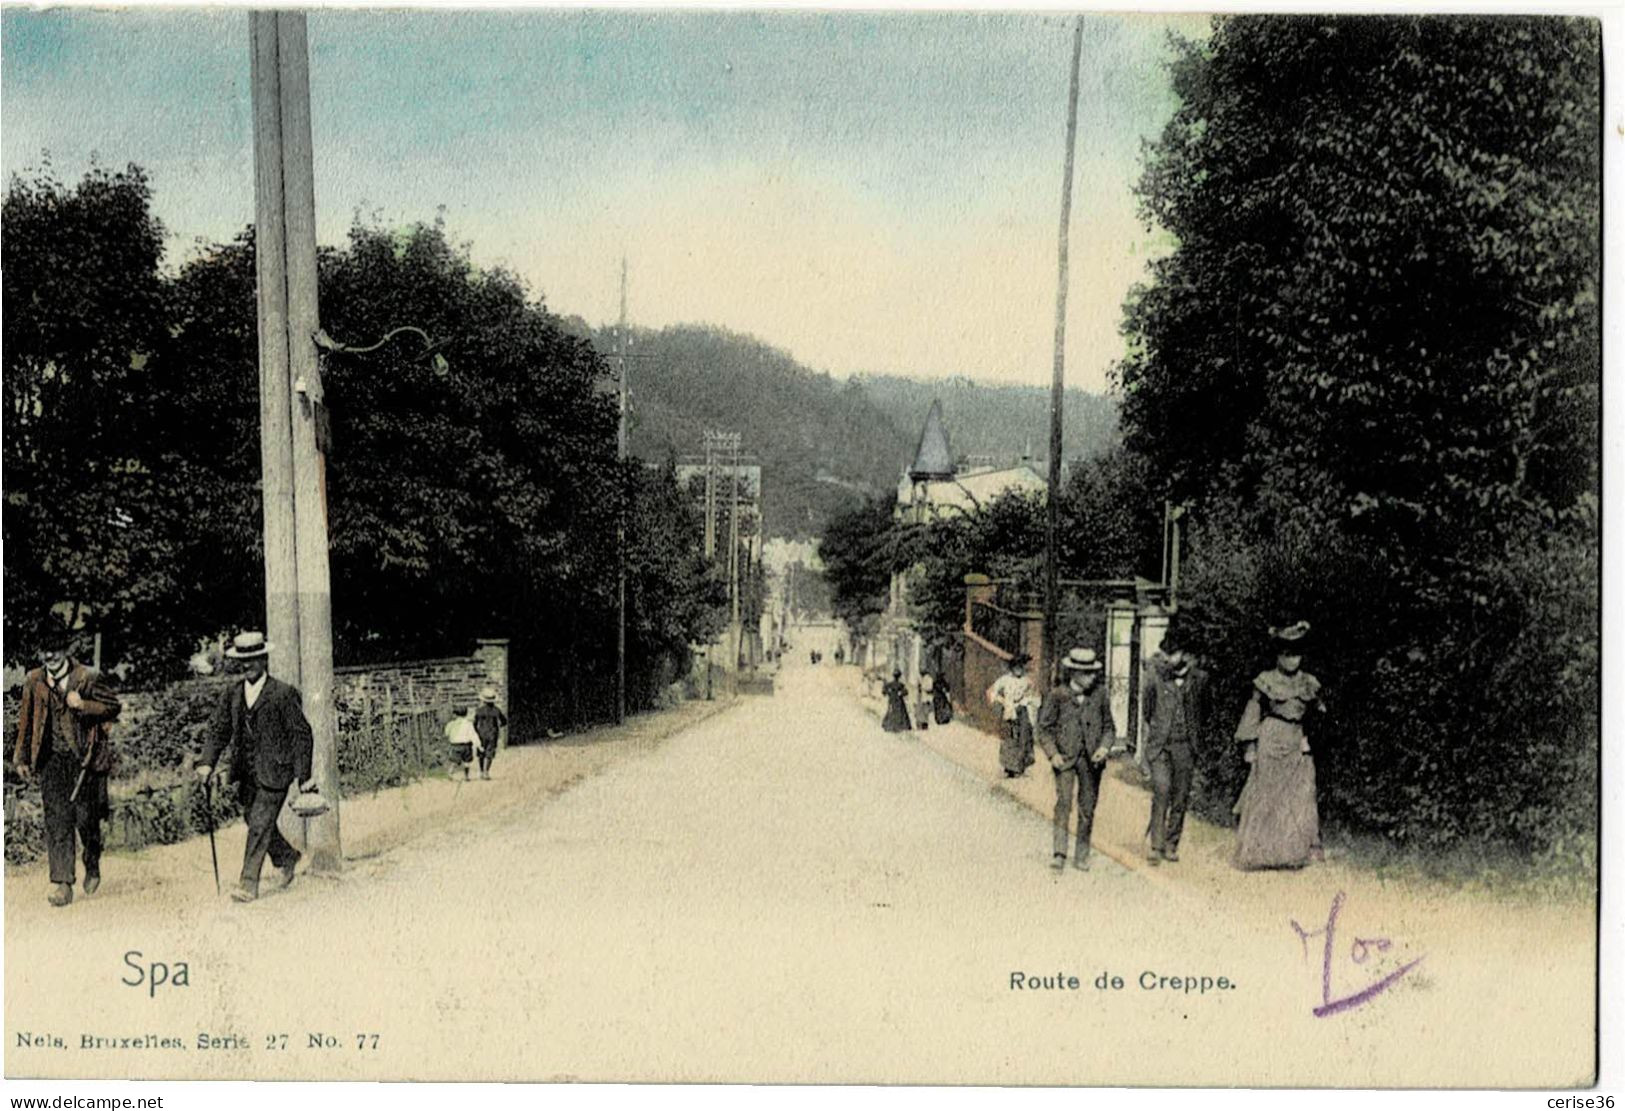 Spa Route De Creppe Nels Bruxelles Couleur Série 27 N° 77 Circulée En 1907 - Spa